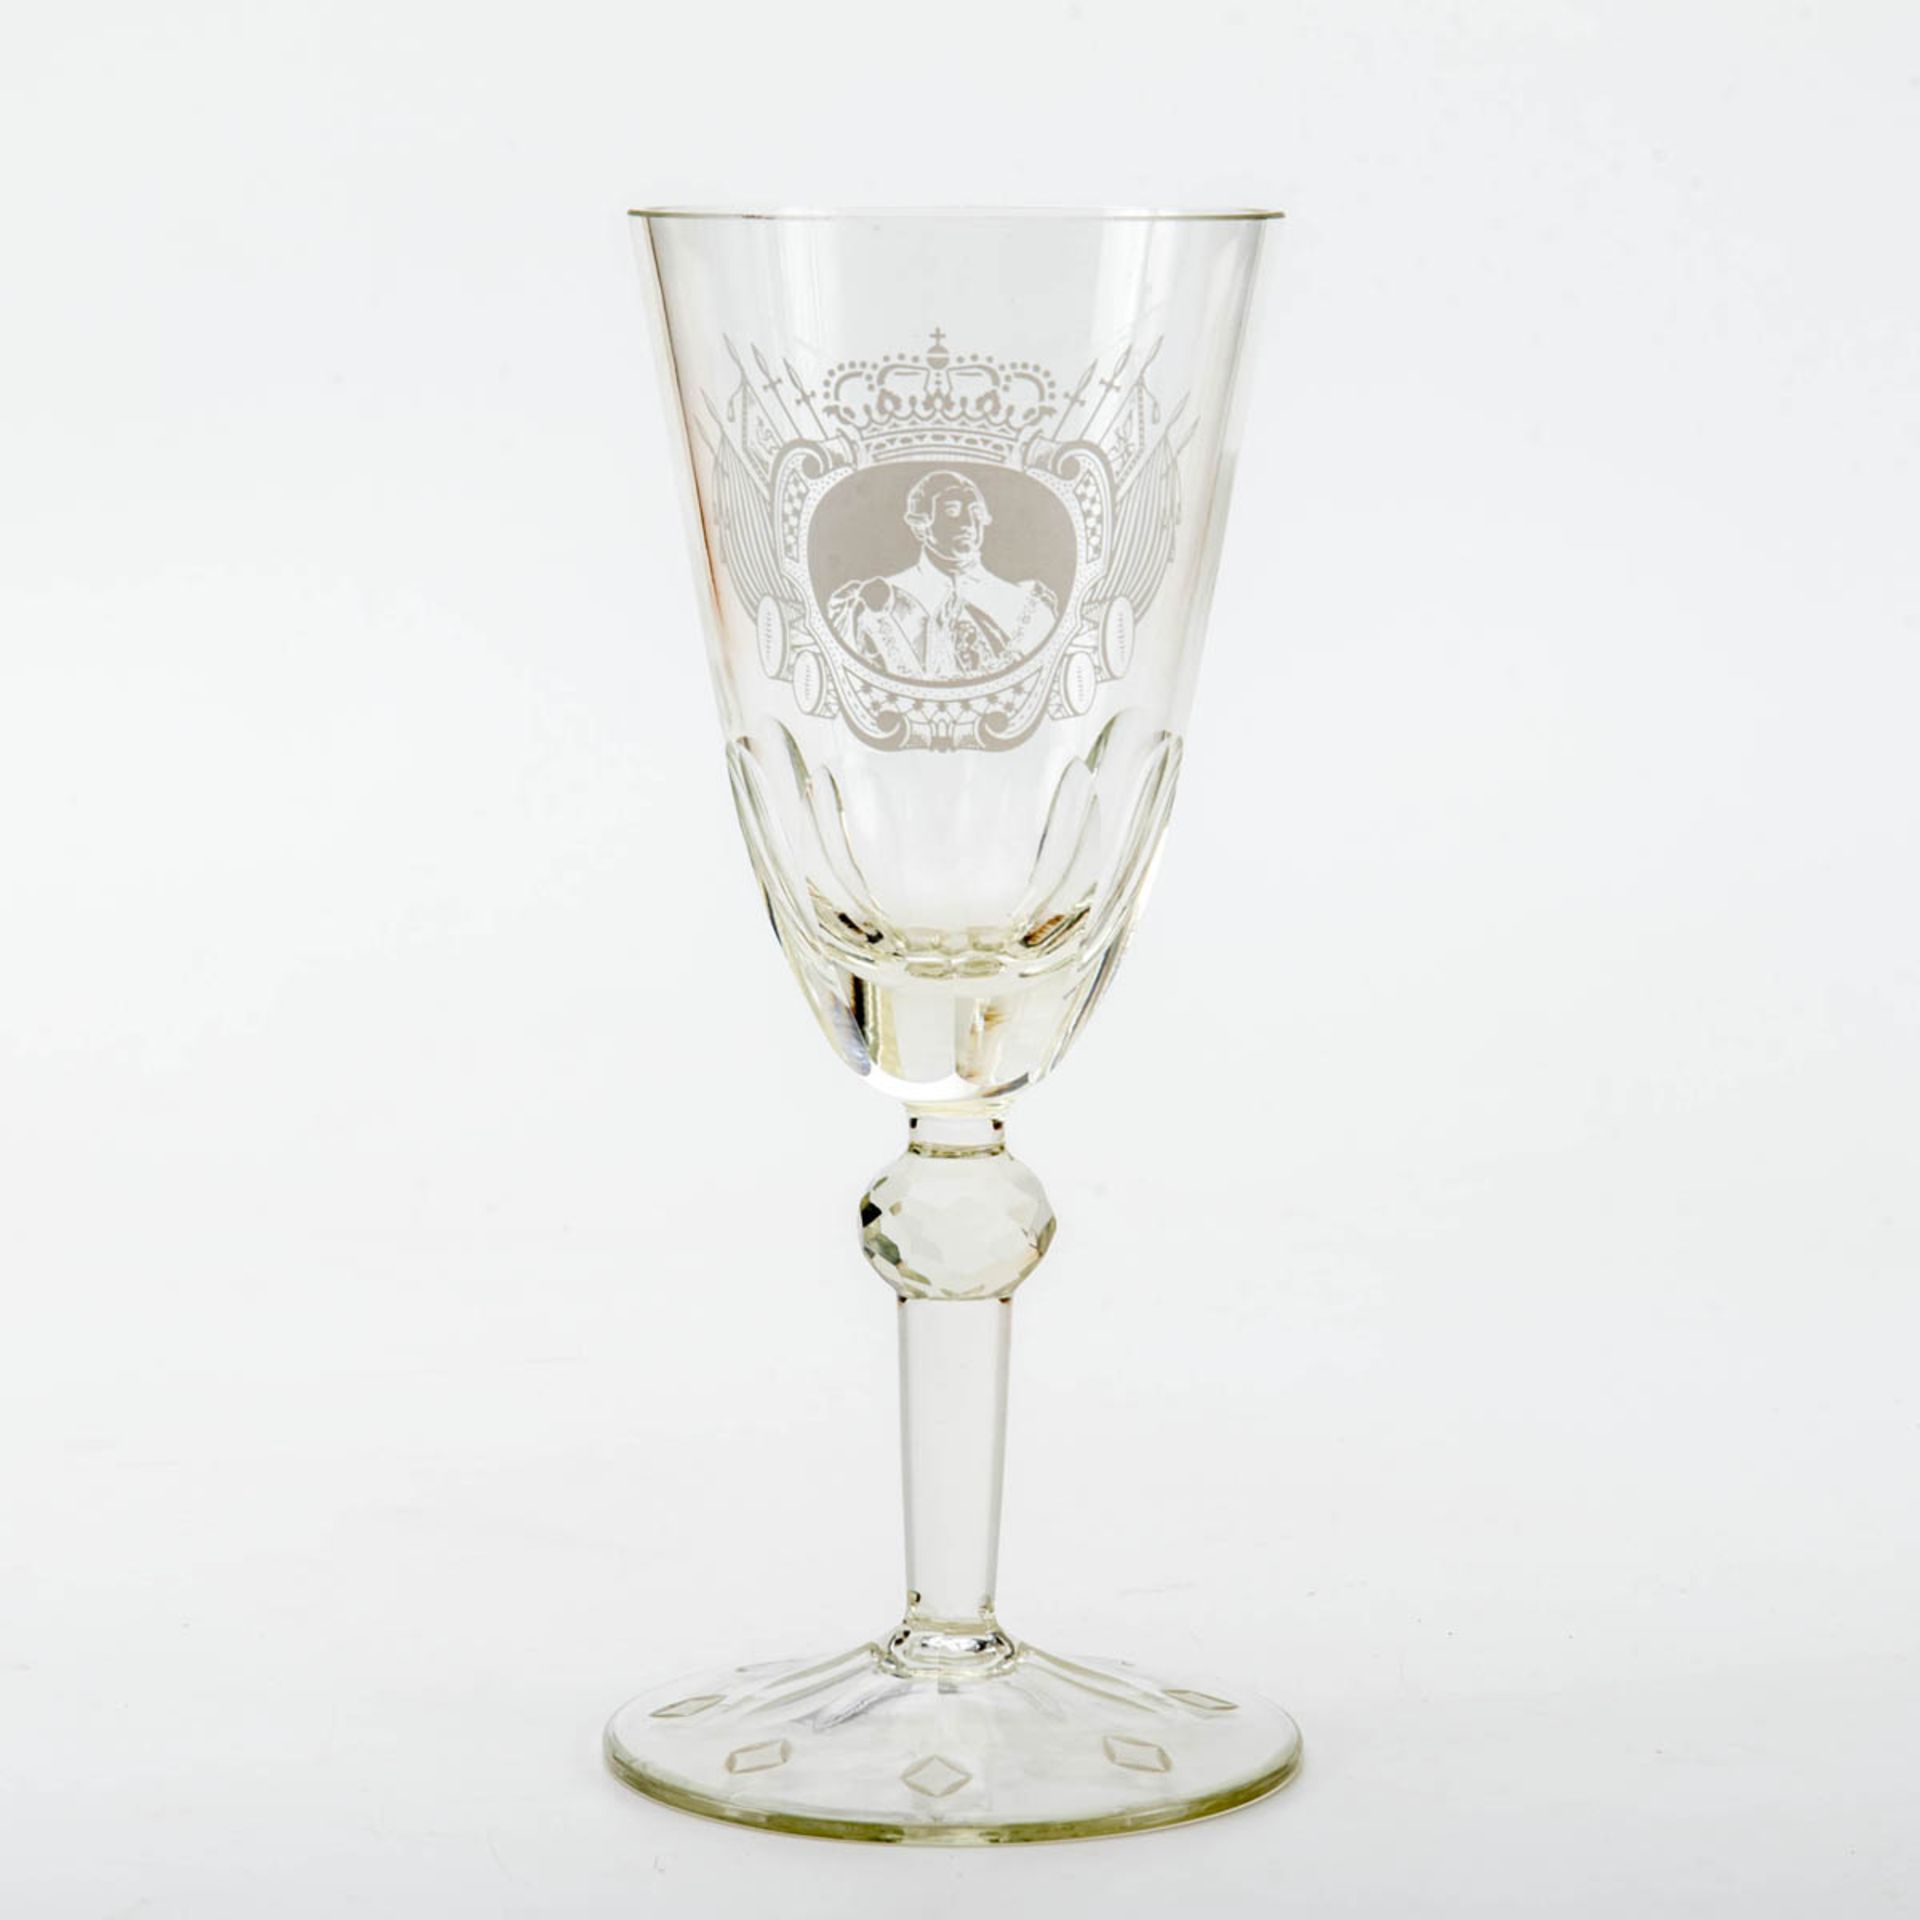 Jubiläums Pokal Georg III von HannoverFarbloses Glas, Schauseite mit Porträt, Rückseite mit Daten.